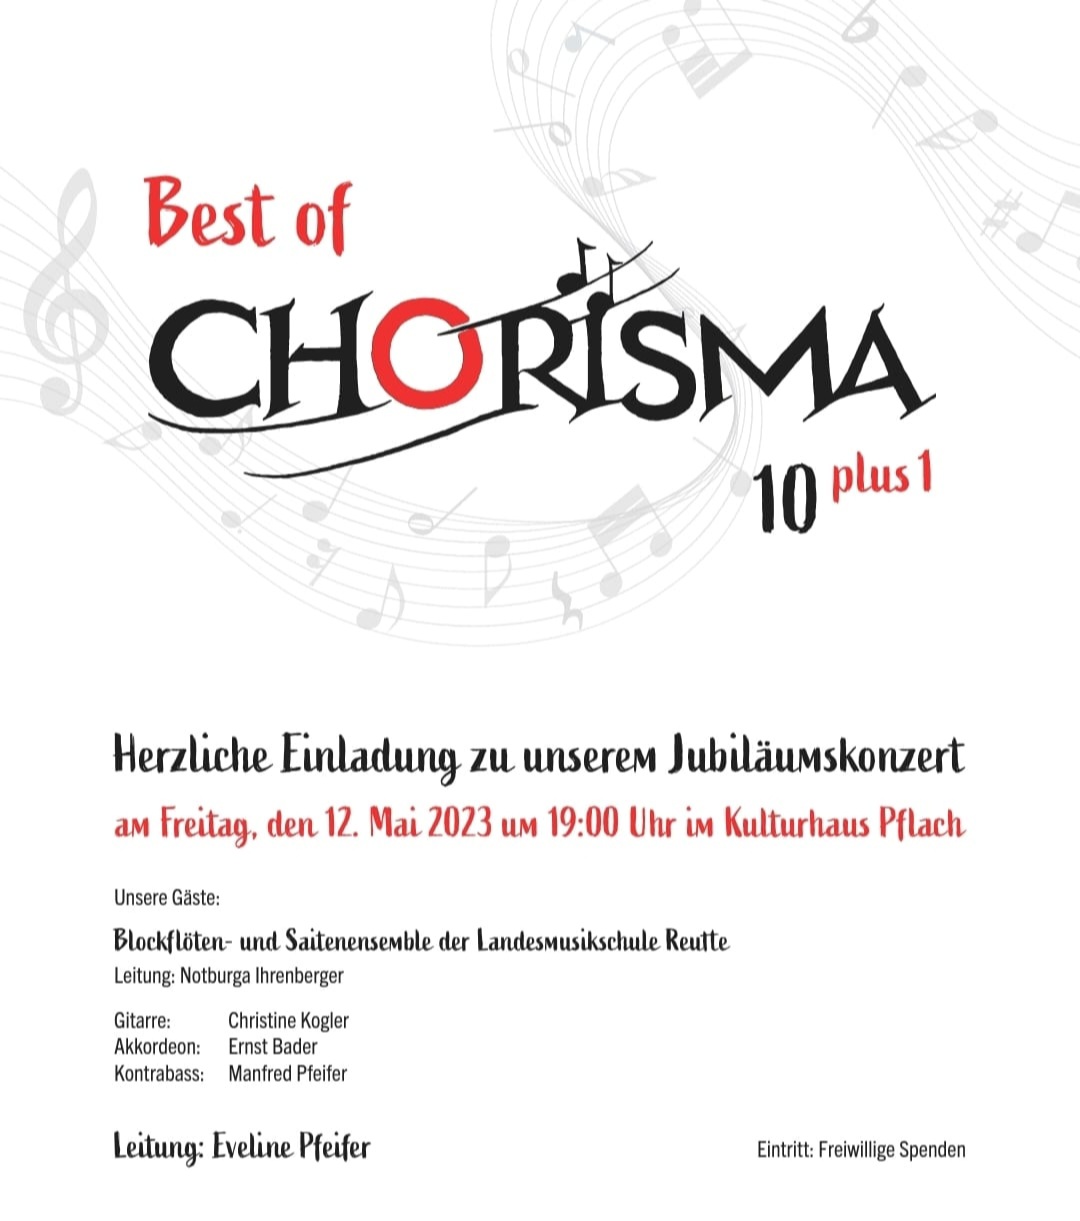 Jubiläumskonzert 10plus1 Frauenchor Chorisma